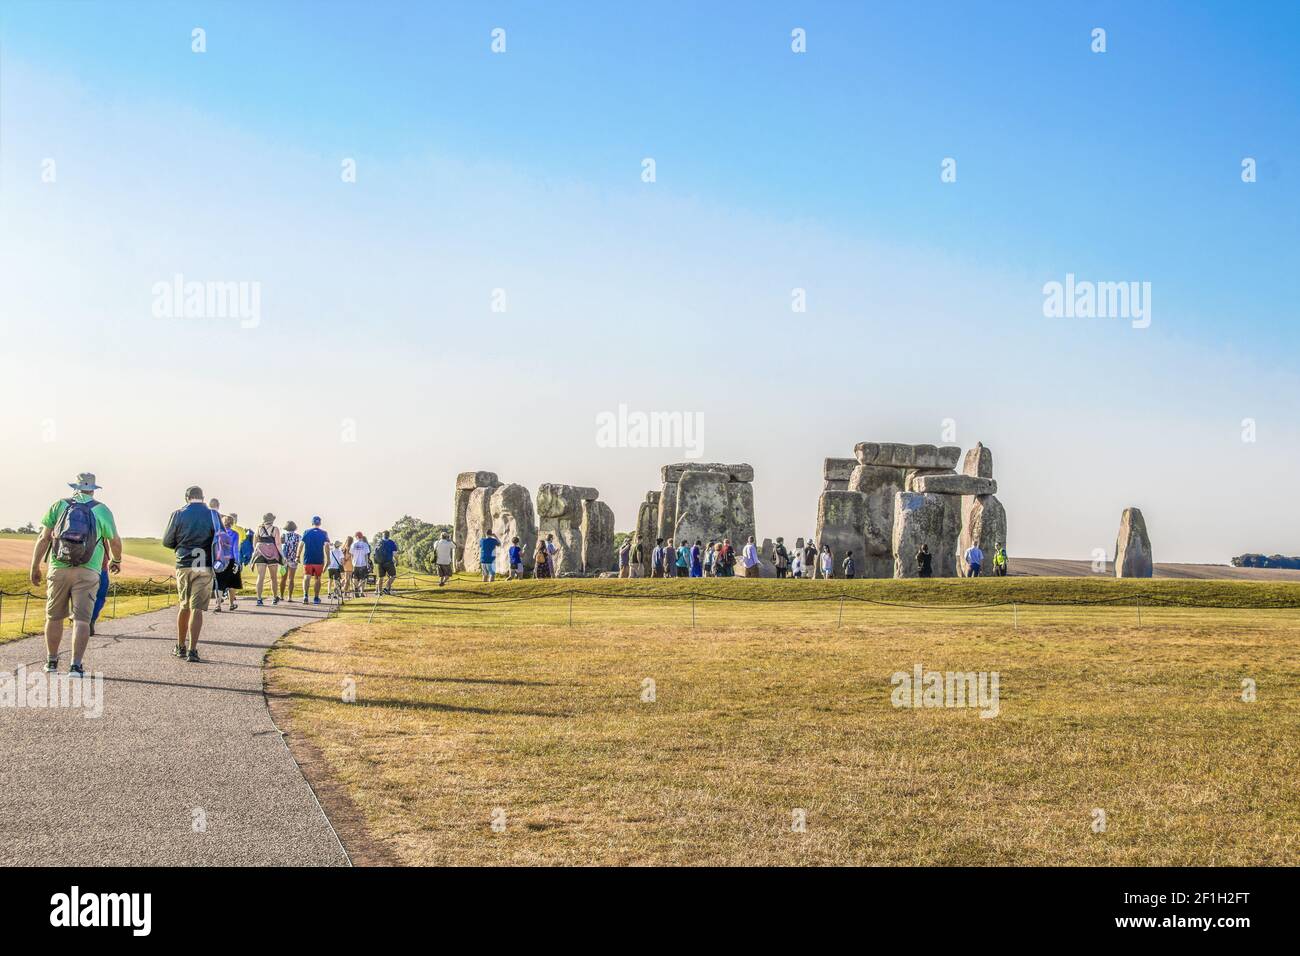 7-25-2019 Stonehenge UK - Touristen zu Fuß Pfad zu alten Stein Kreis in der Mitte eines Ebene- auf Heißester Tag in der englischen Geschichte - die meisten Taki Stockfoto